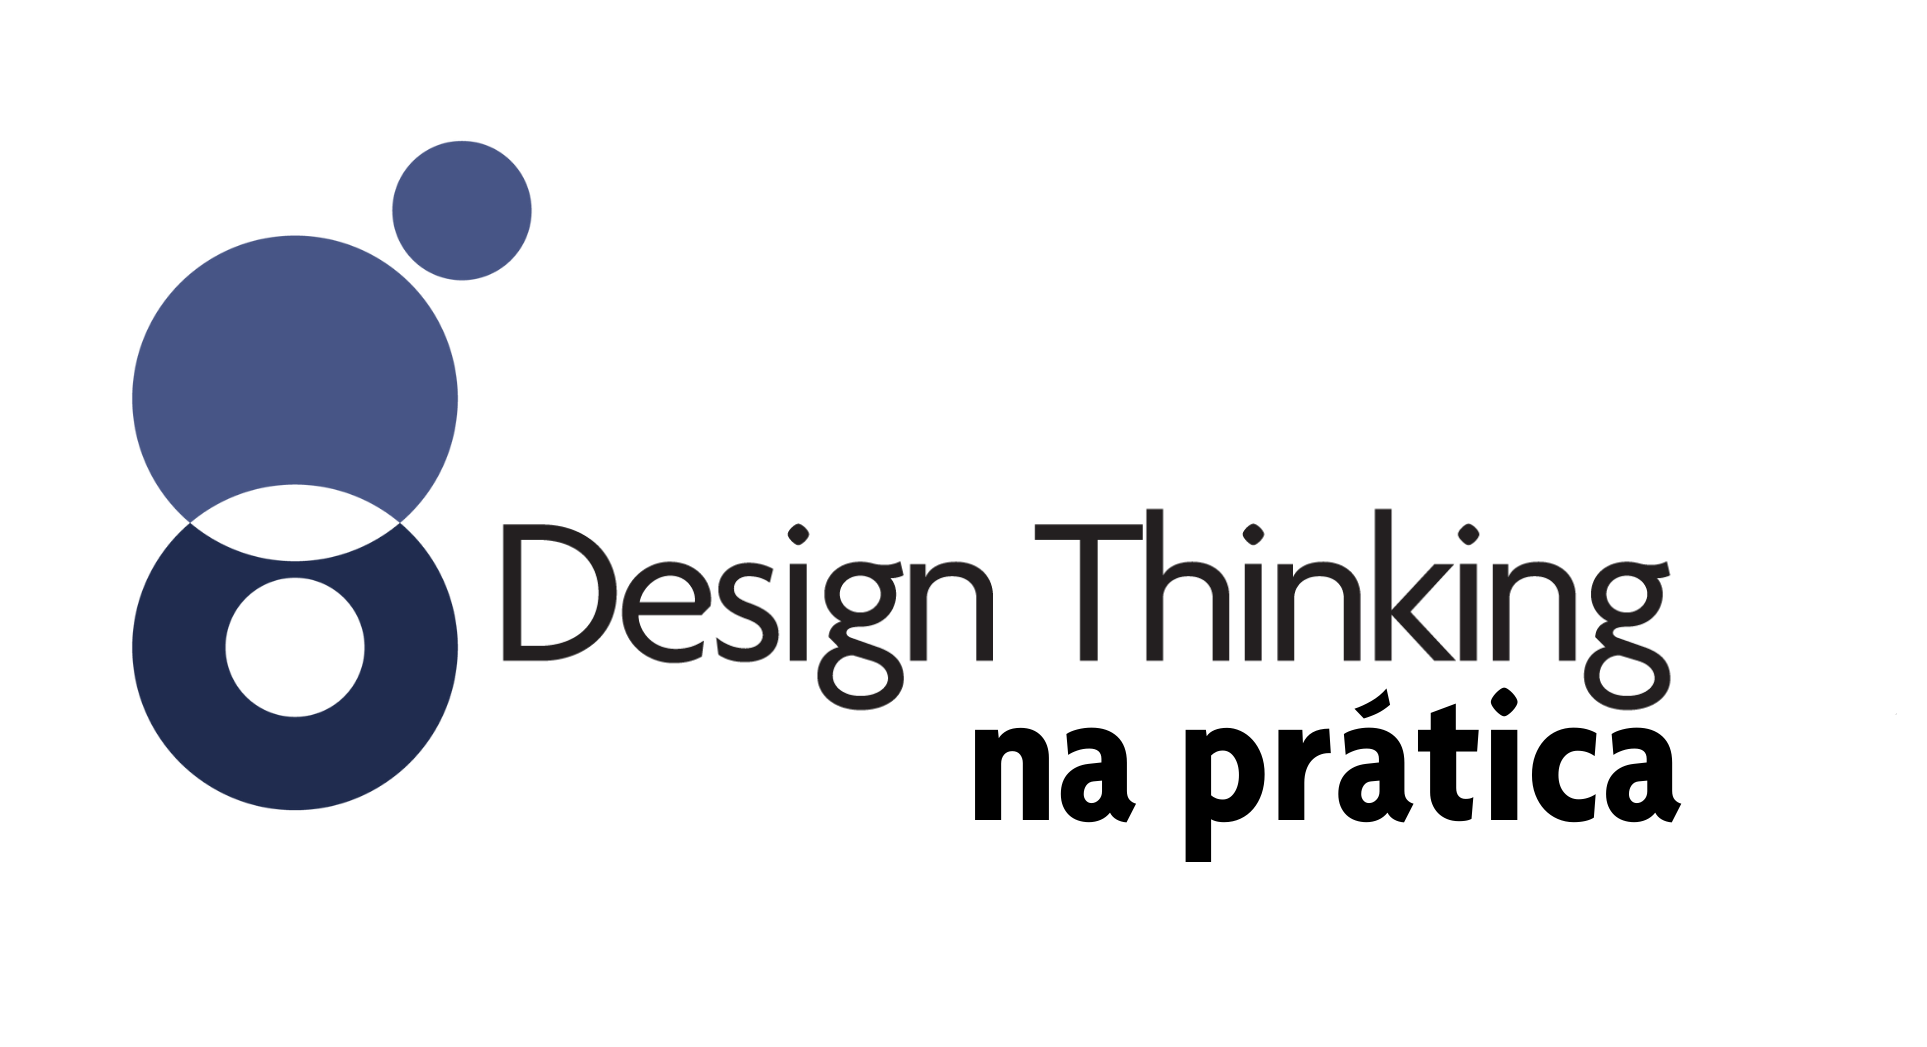 design thinking na prática